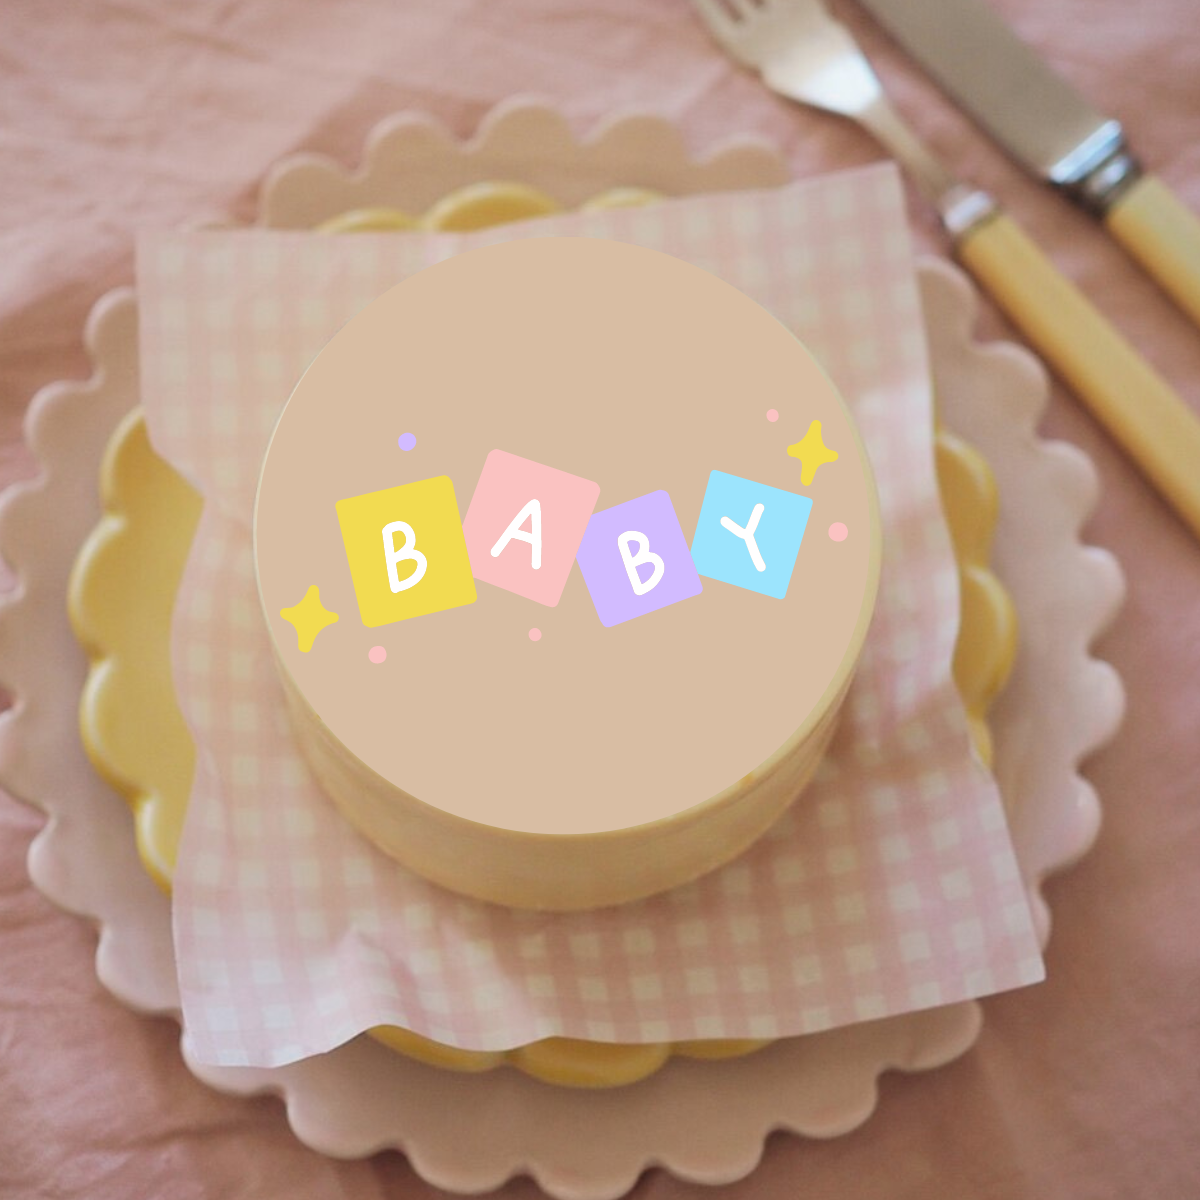 NEW BABY Chocolate Bento Box Cake